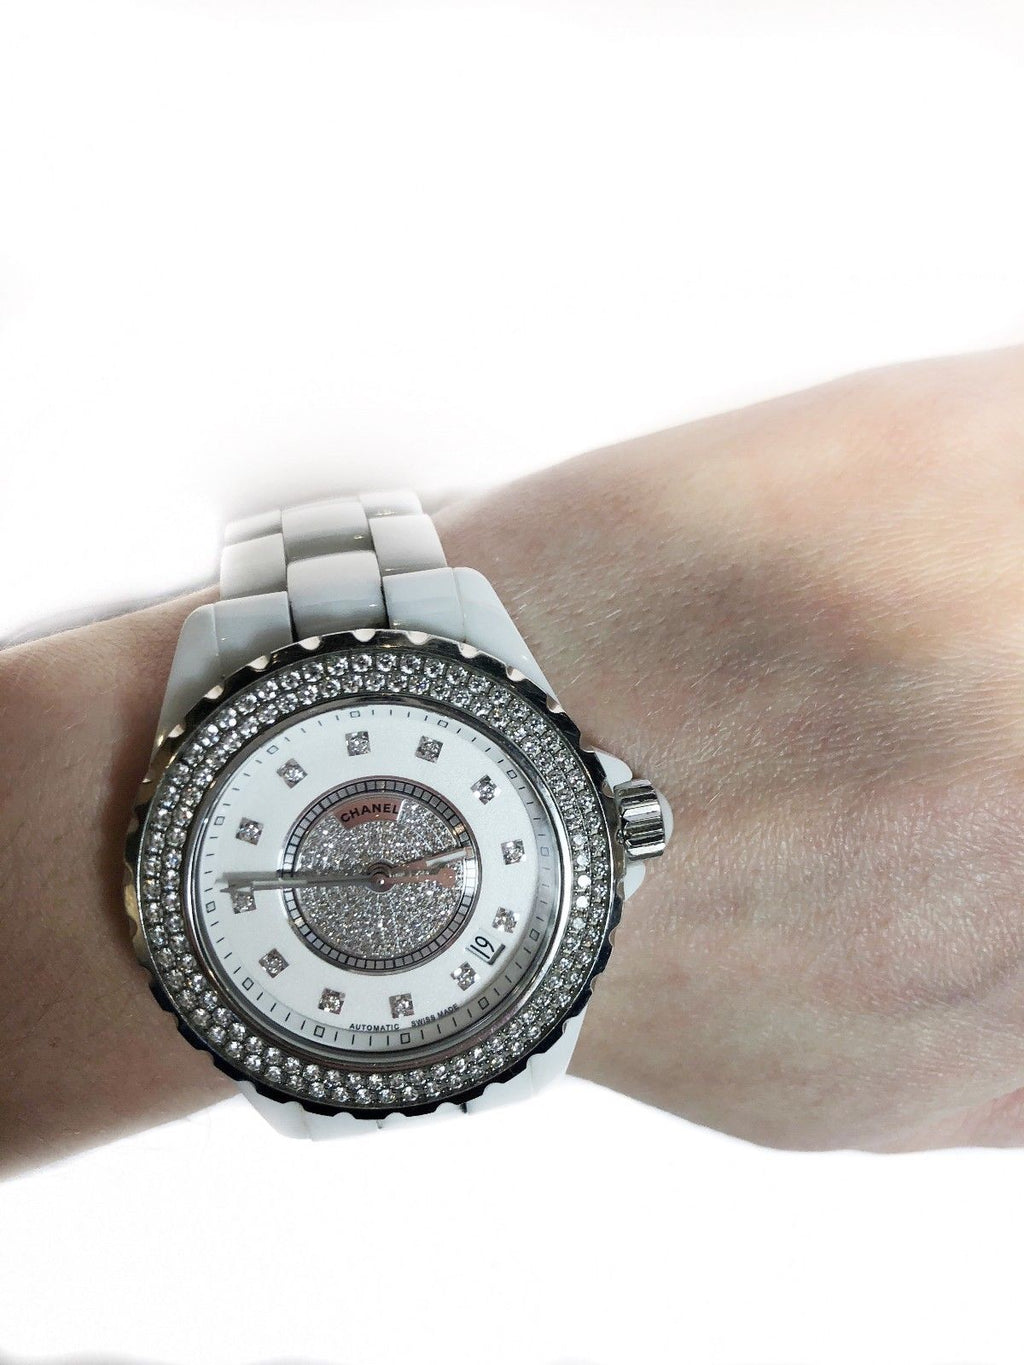 CHANEL J12 Automatic Ceramic Lady's Watch w/ 12 Diamonds! - $30K VALUE!